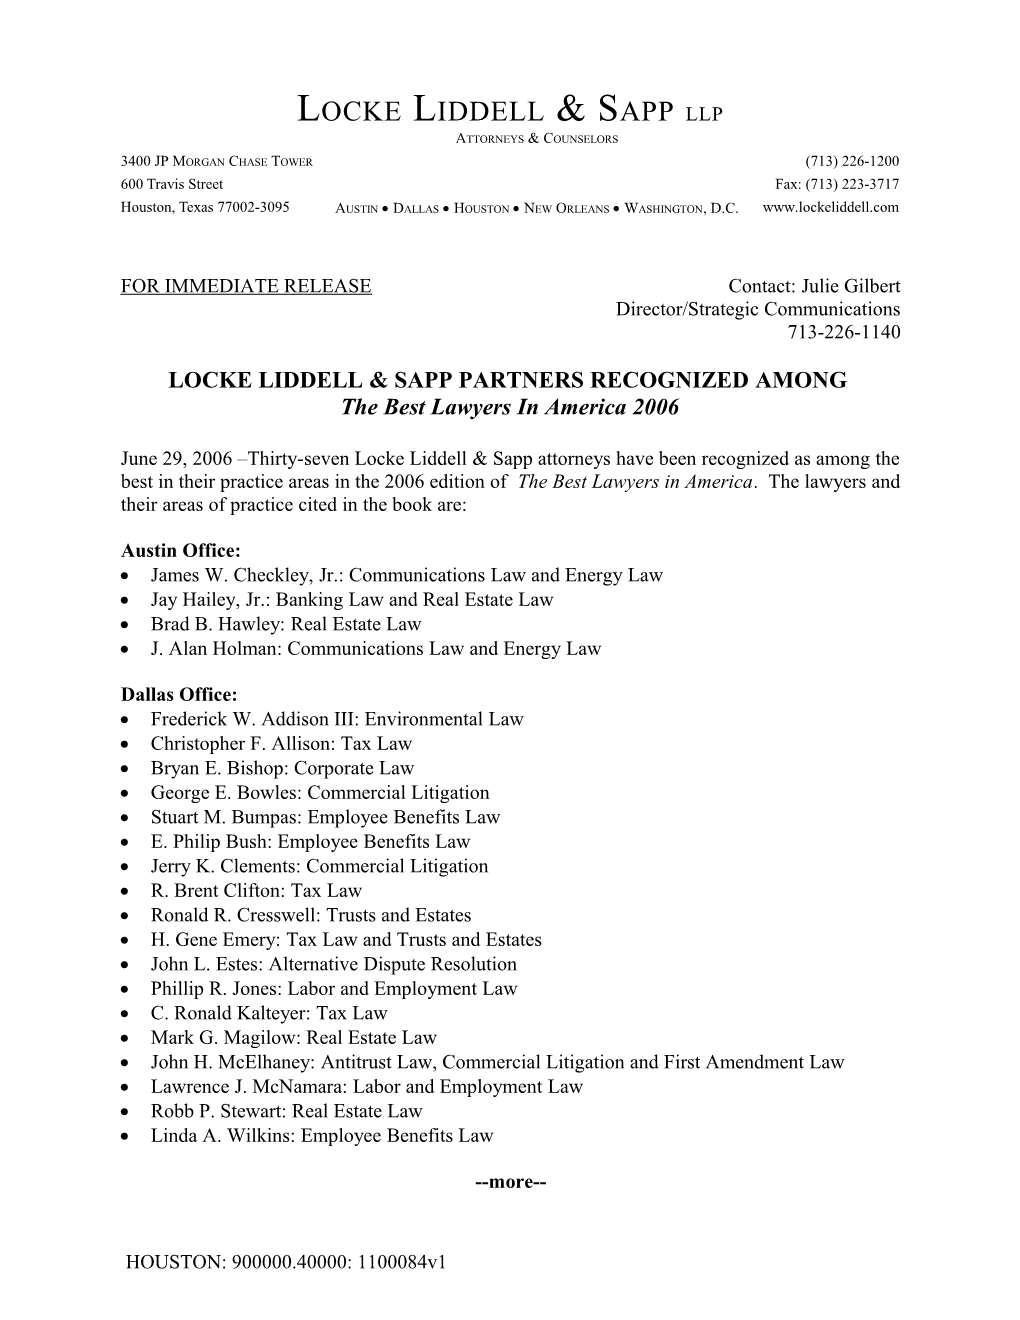 Locke Liddell & Sapp Partners Recognized Among